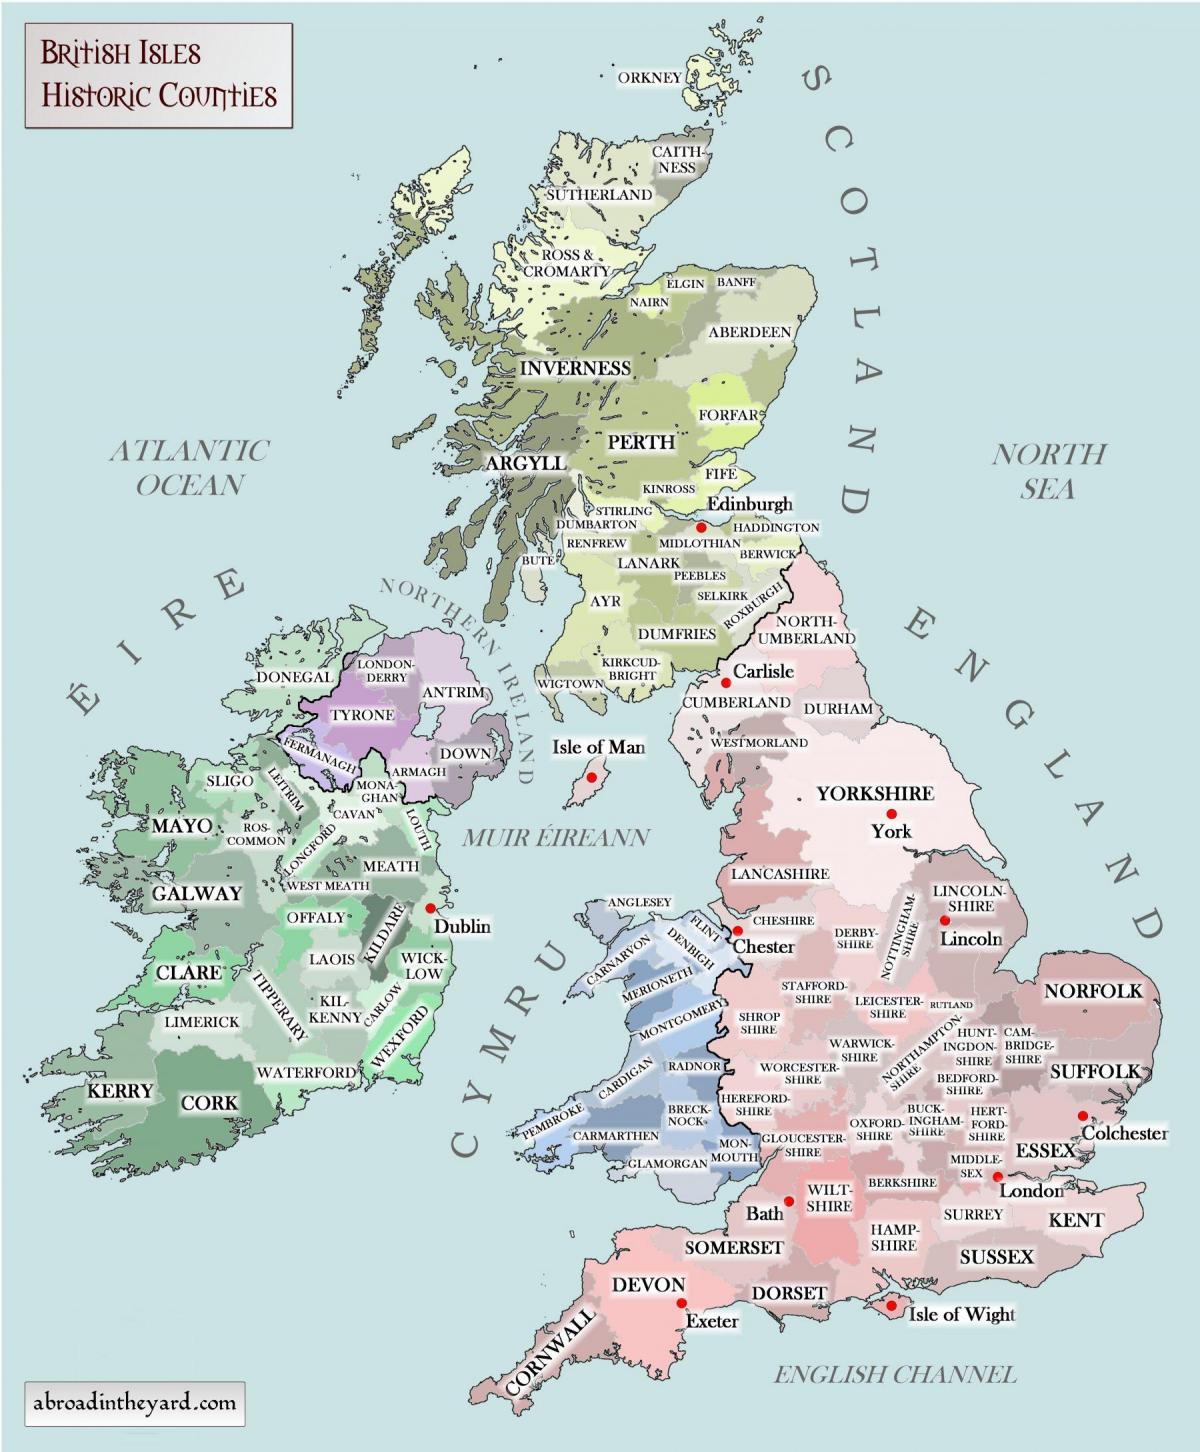 الخريطة التاريخية للمملكة المتحدة (المملكة المتحدة)